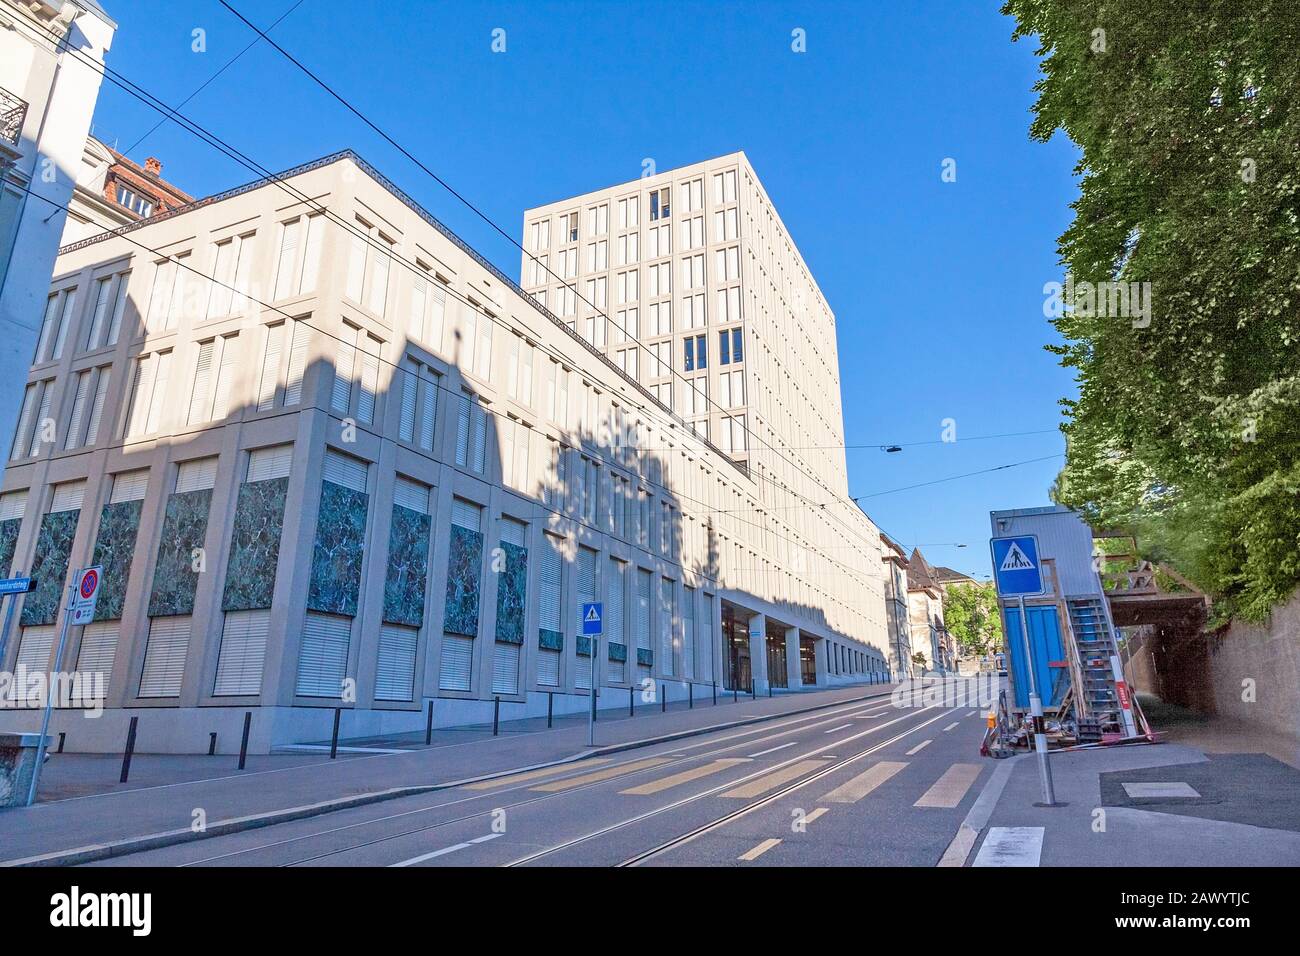 Zurich, Switzerland - June 10, 2017: Swiss Federal Institute Of Technology Main Building In Zurich Stock Photo